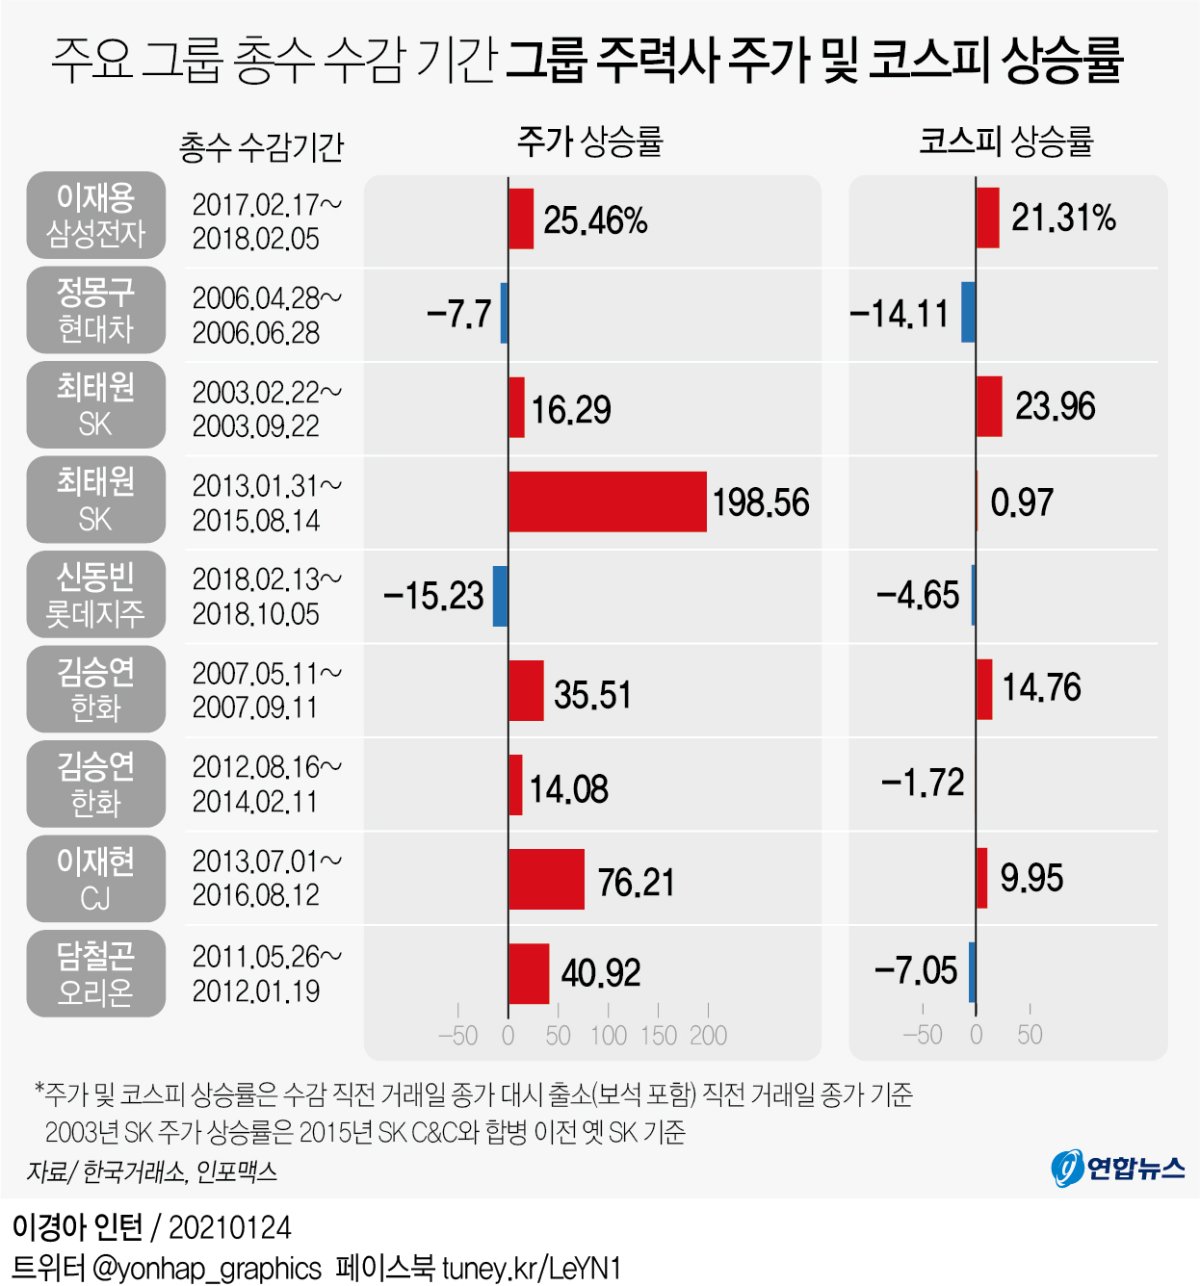 [그래픽] 주요 그룹 총수 수감 기간 그룹 주력사 주가 및 코스피 상승률